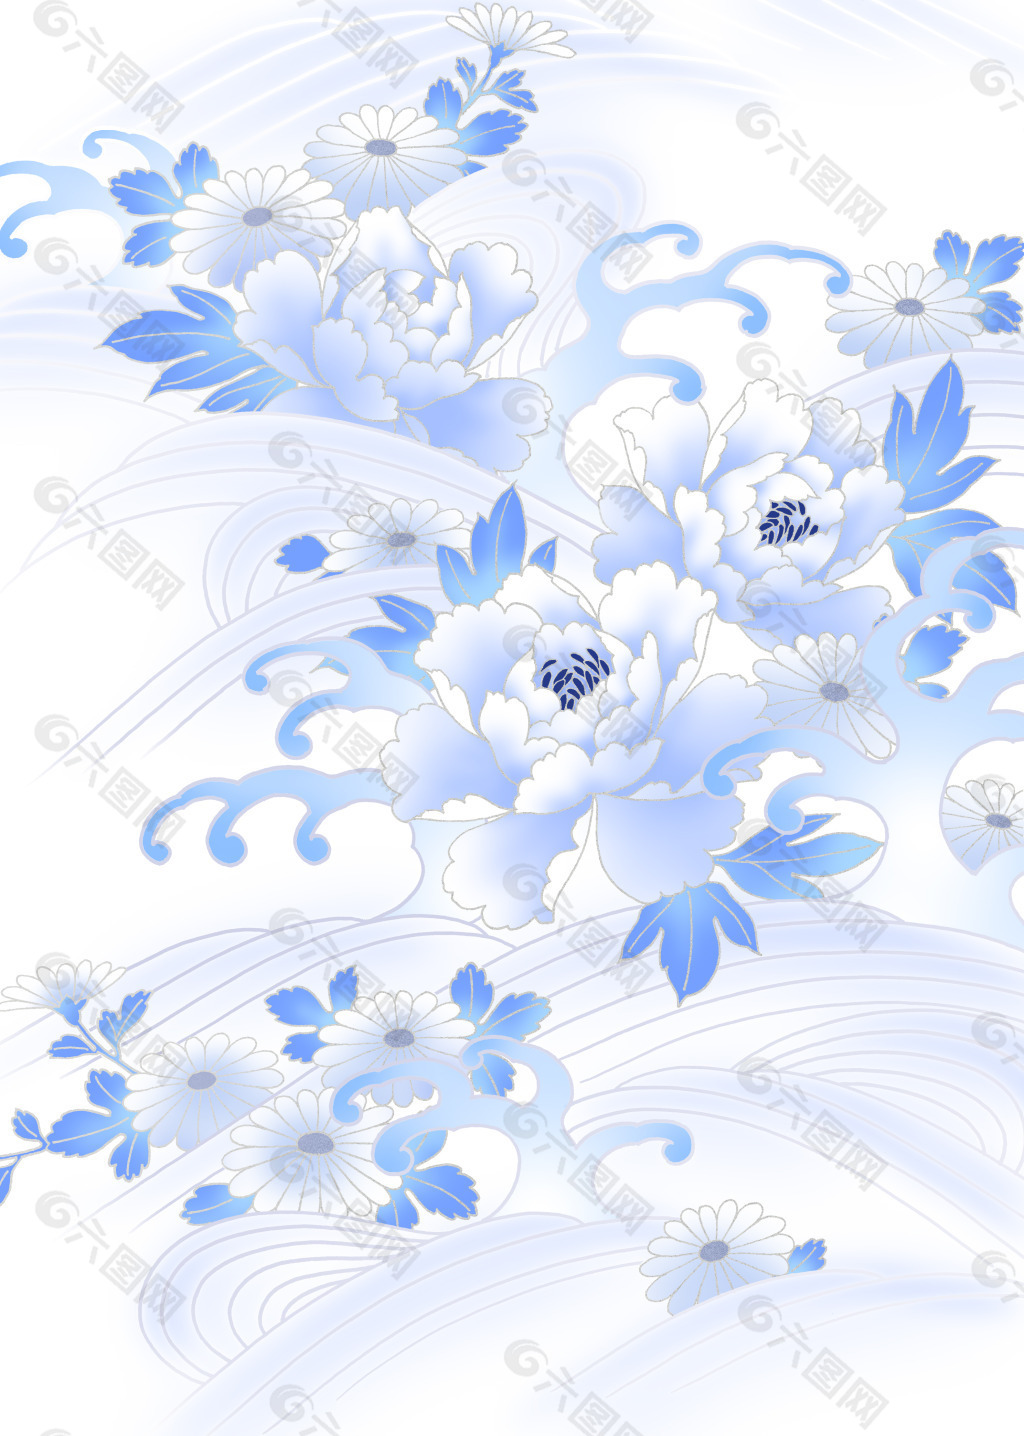 青花瓷蓝白装饰装修素材免费下载(图片编号:2046194)